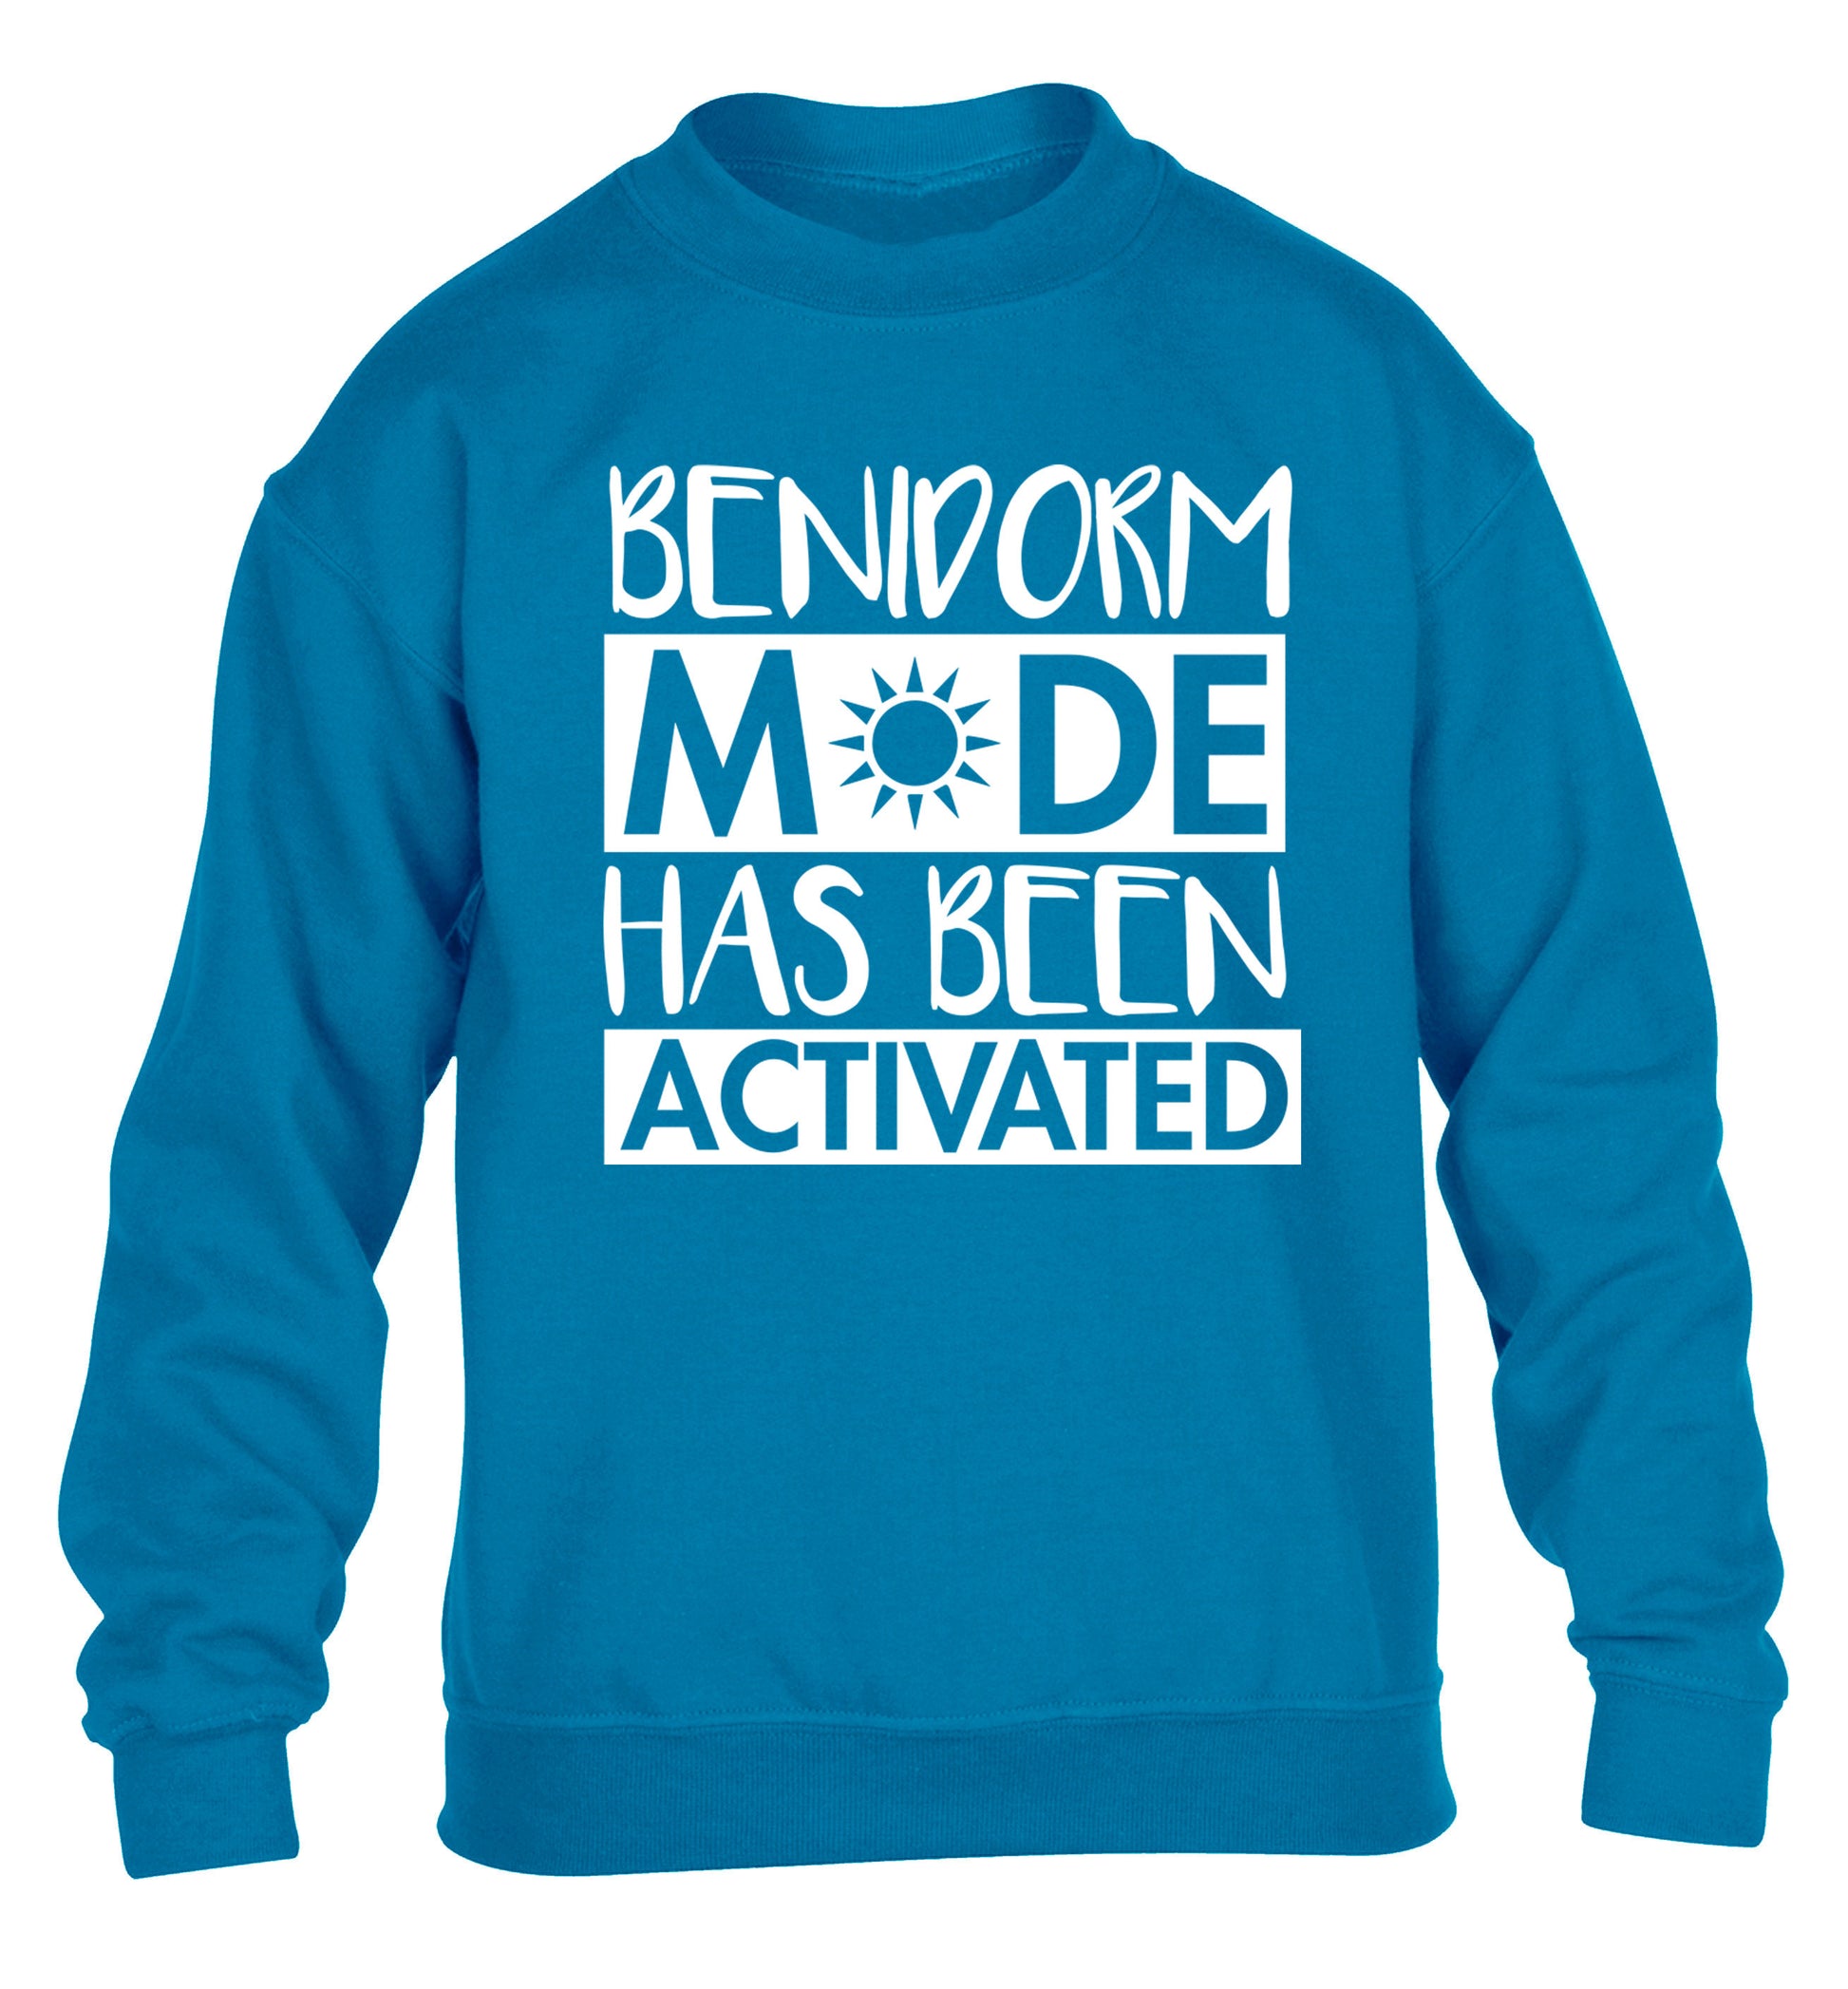 Benidorm mode has been activated children's blue sweater 12-14 Years